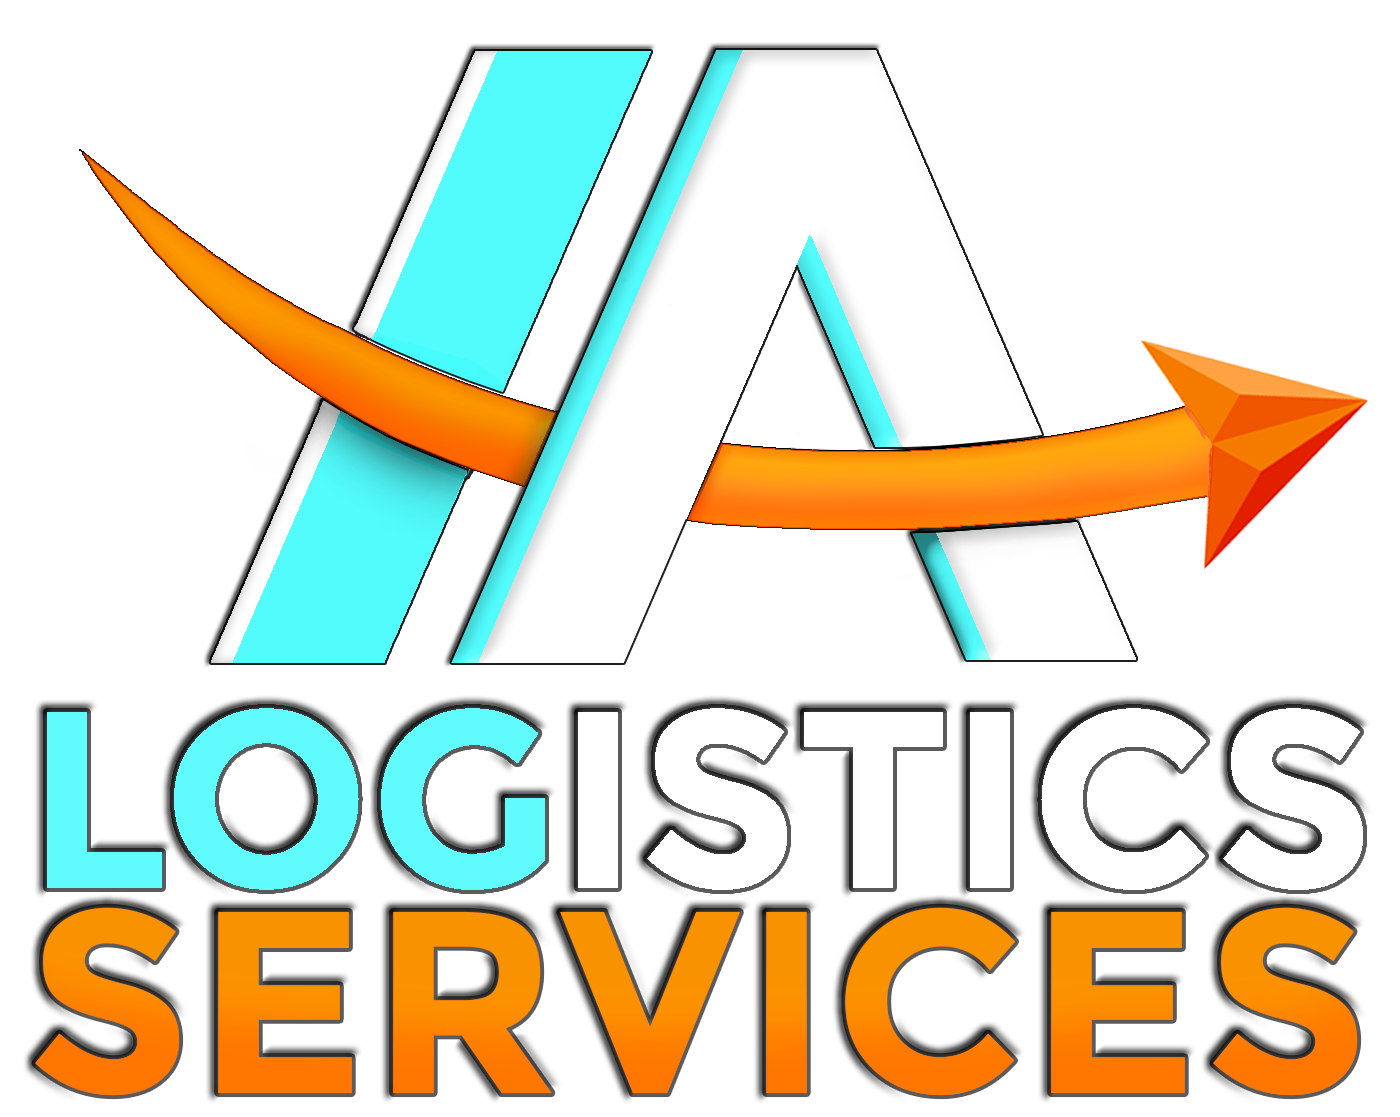 I-Jab Logistics Services (@IJabLogistics) / X